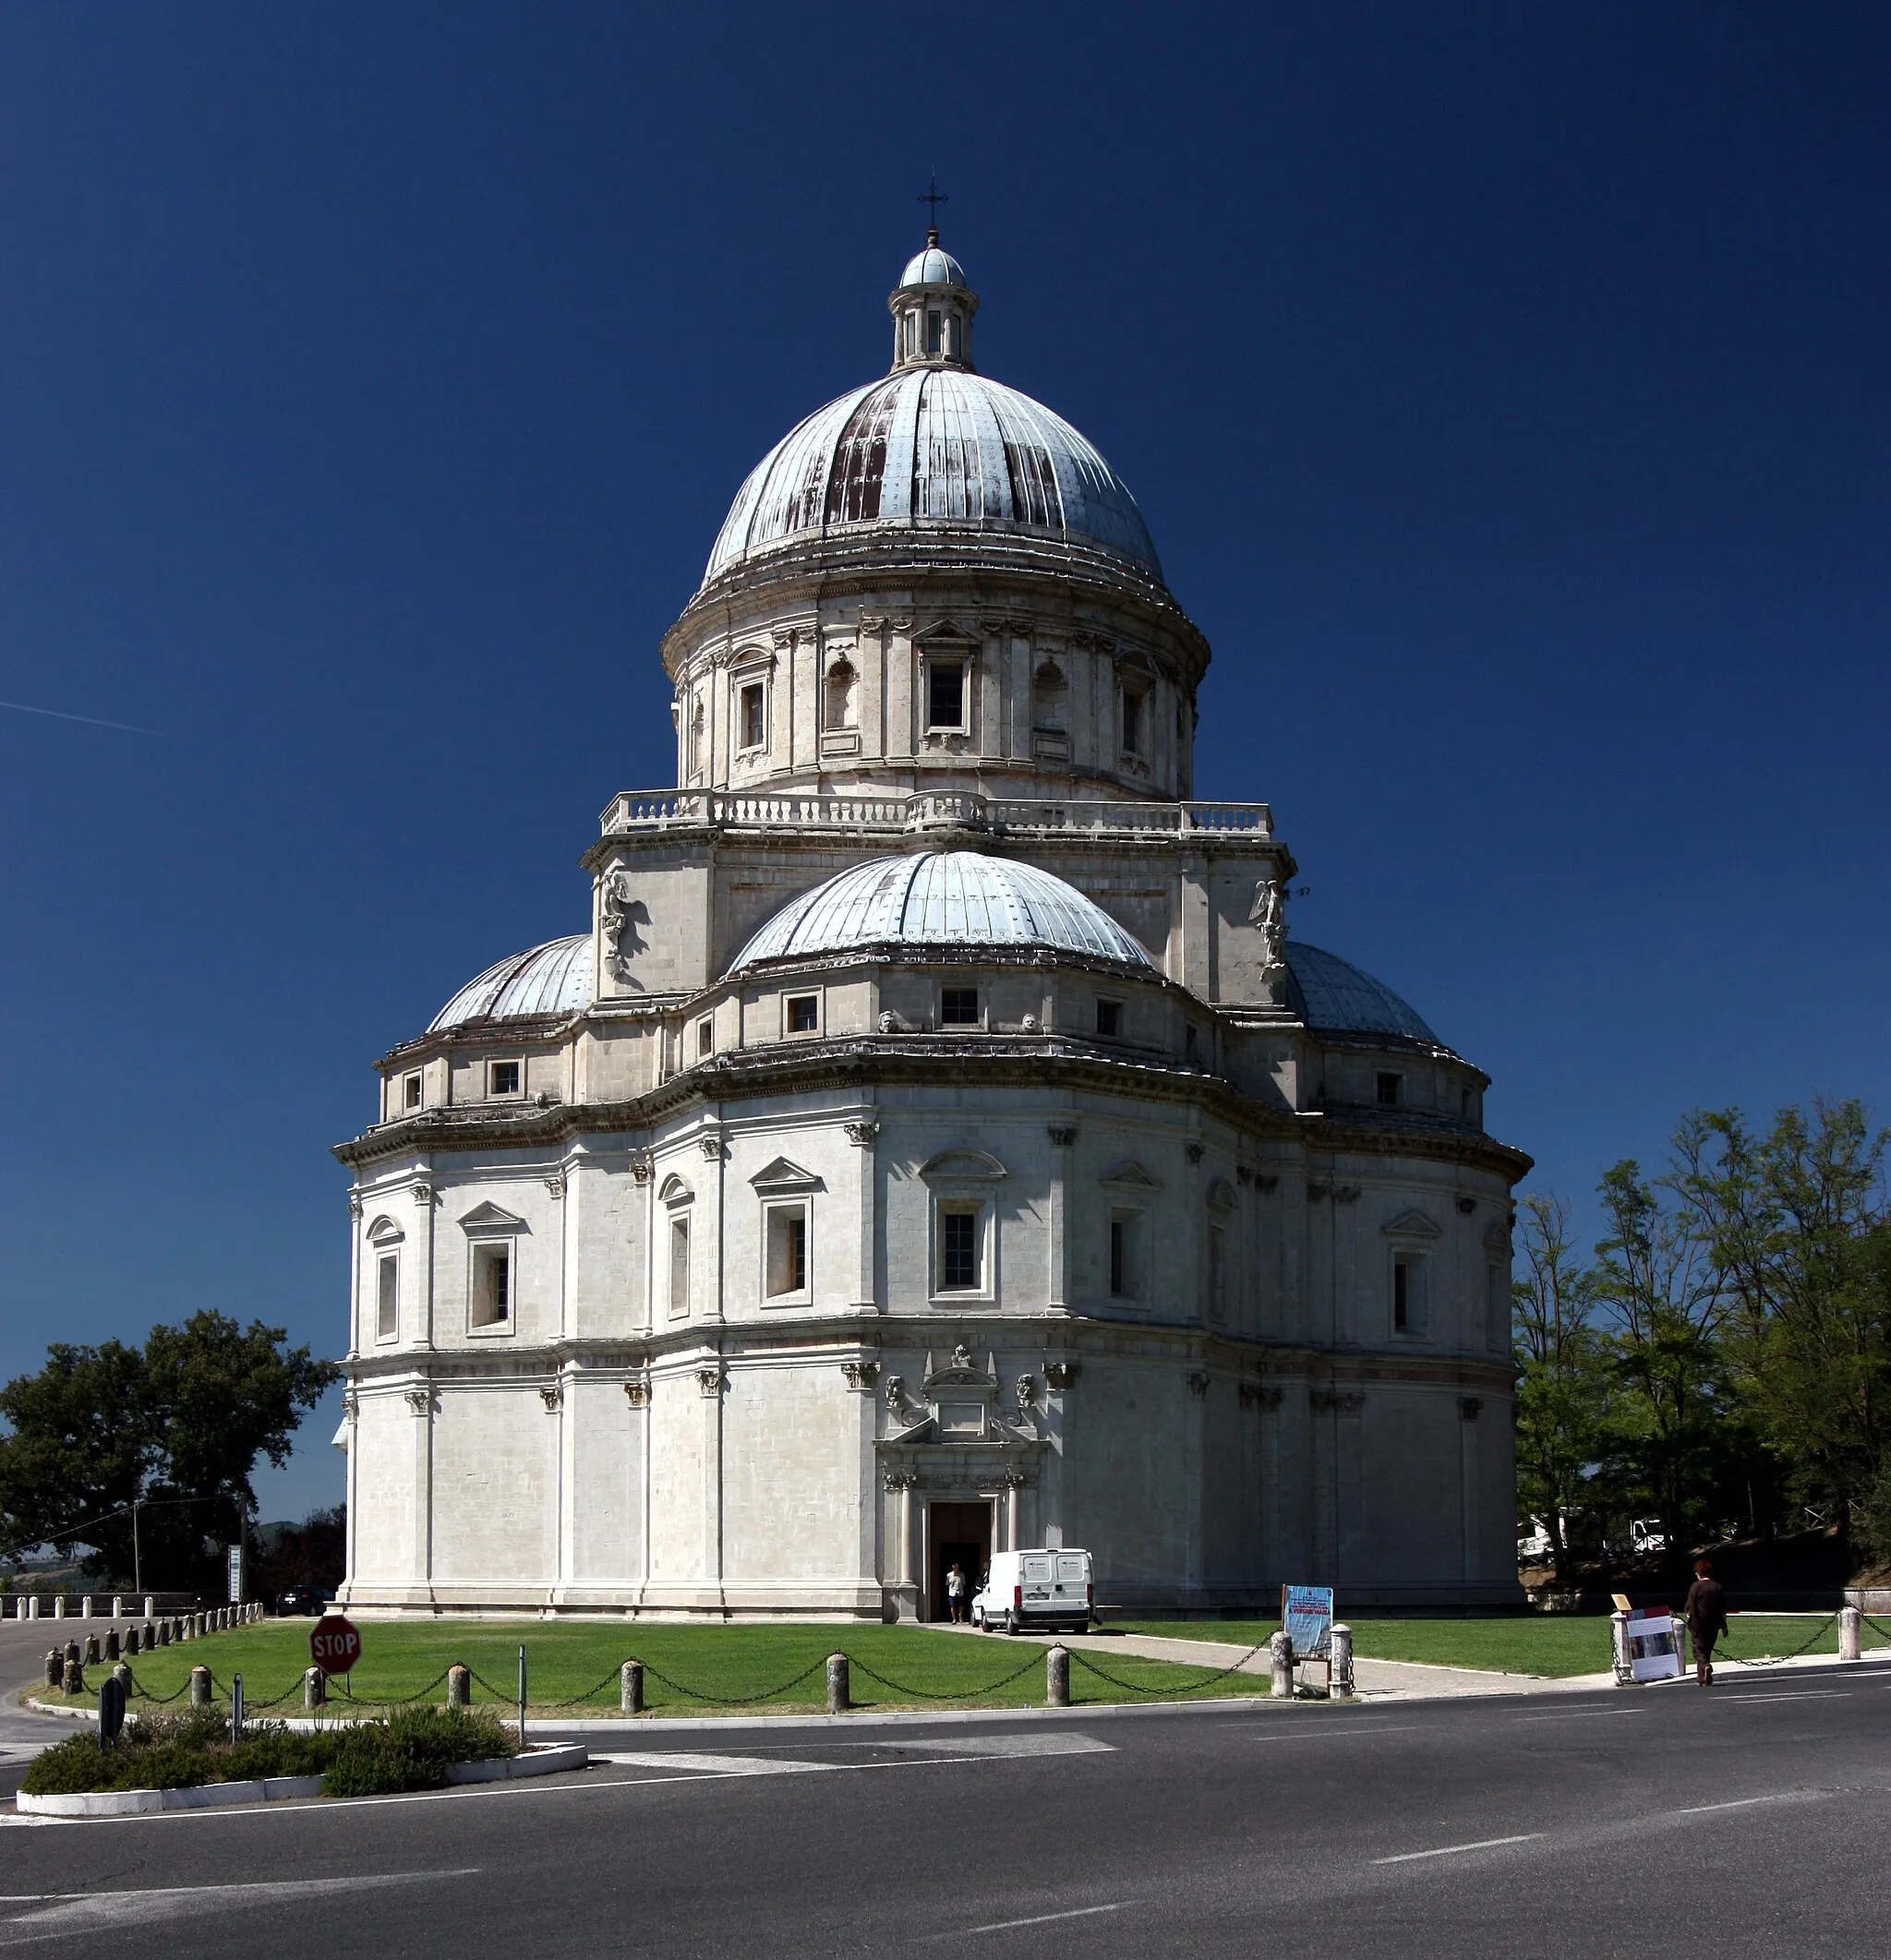 Photo showing: The Donato Bramante's Santa Maria della Consolazione church in Todi, Umbria, Italy